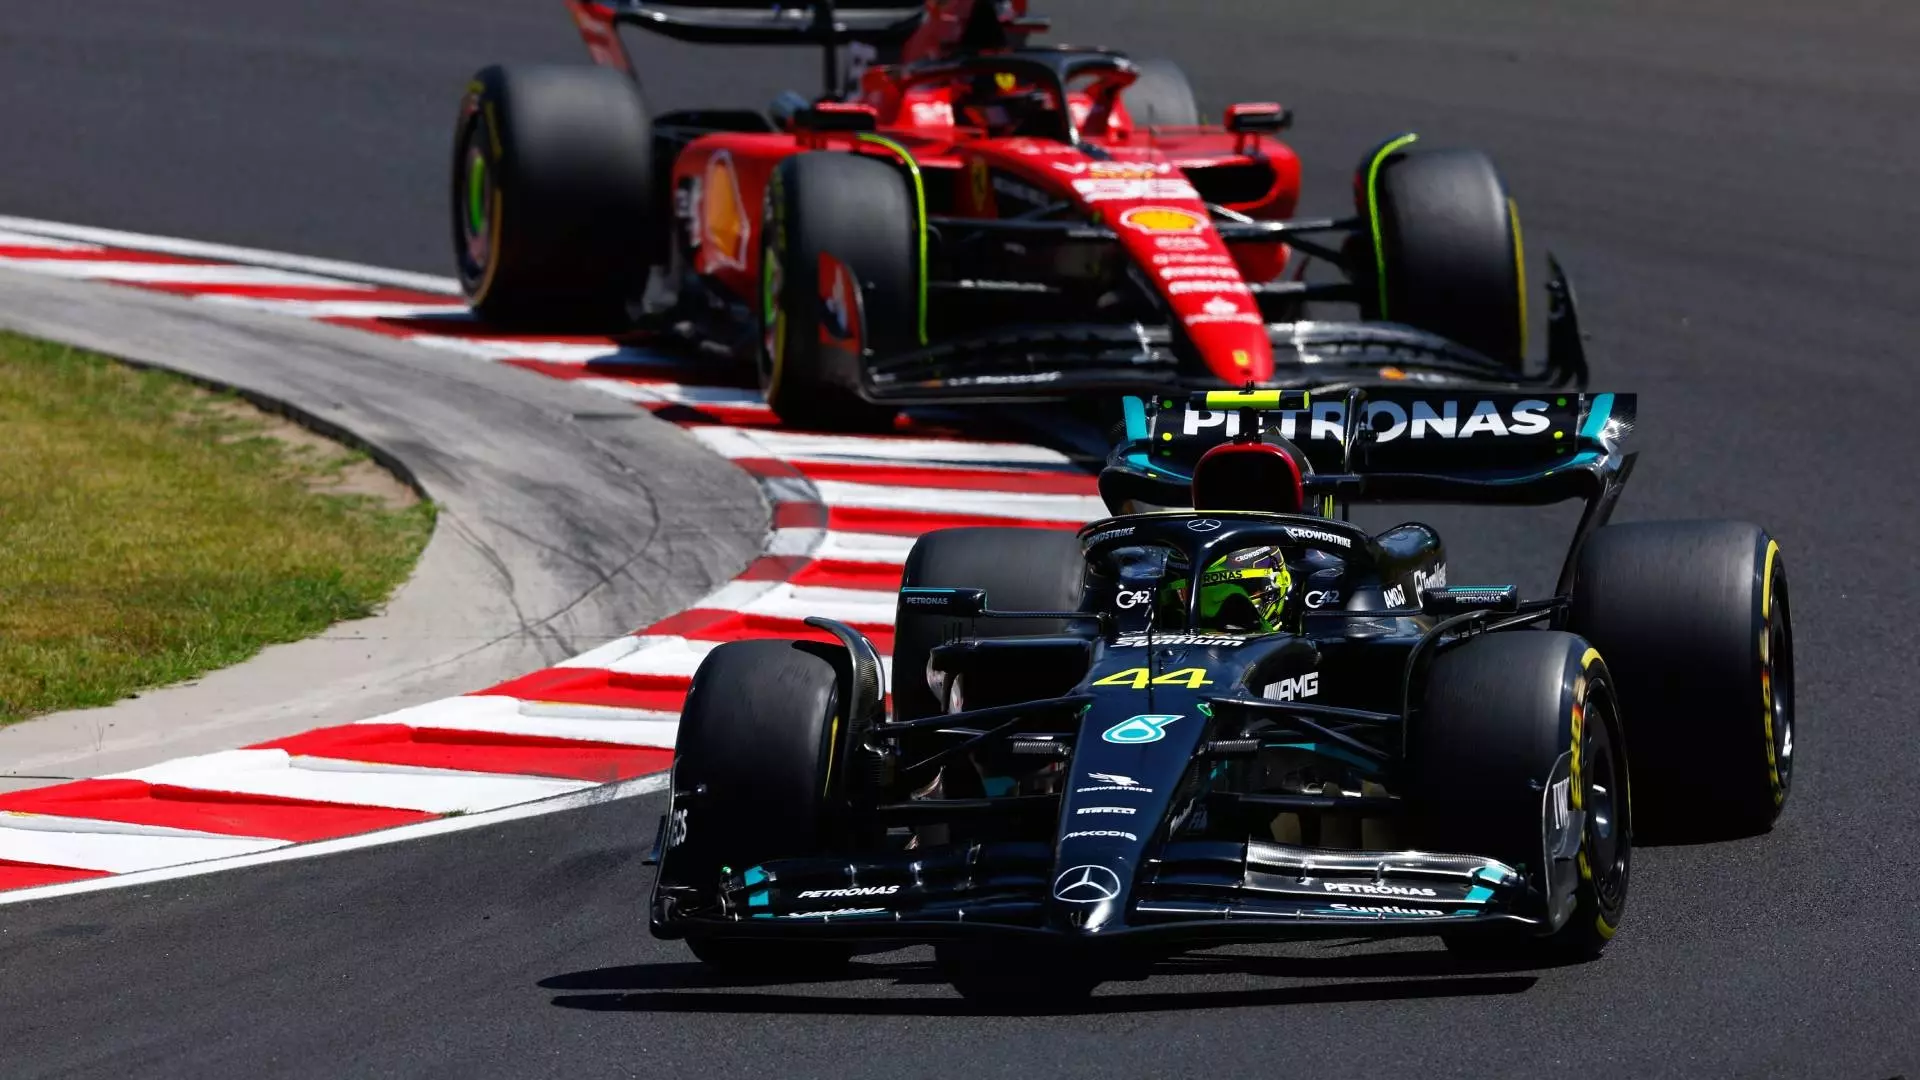 F1, Gp Ungheria: Hamilton beffa Verstappen nelle ultime libere. Leclerc settimo